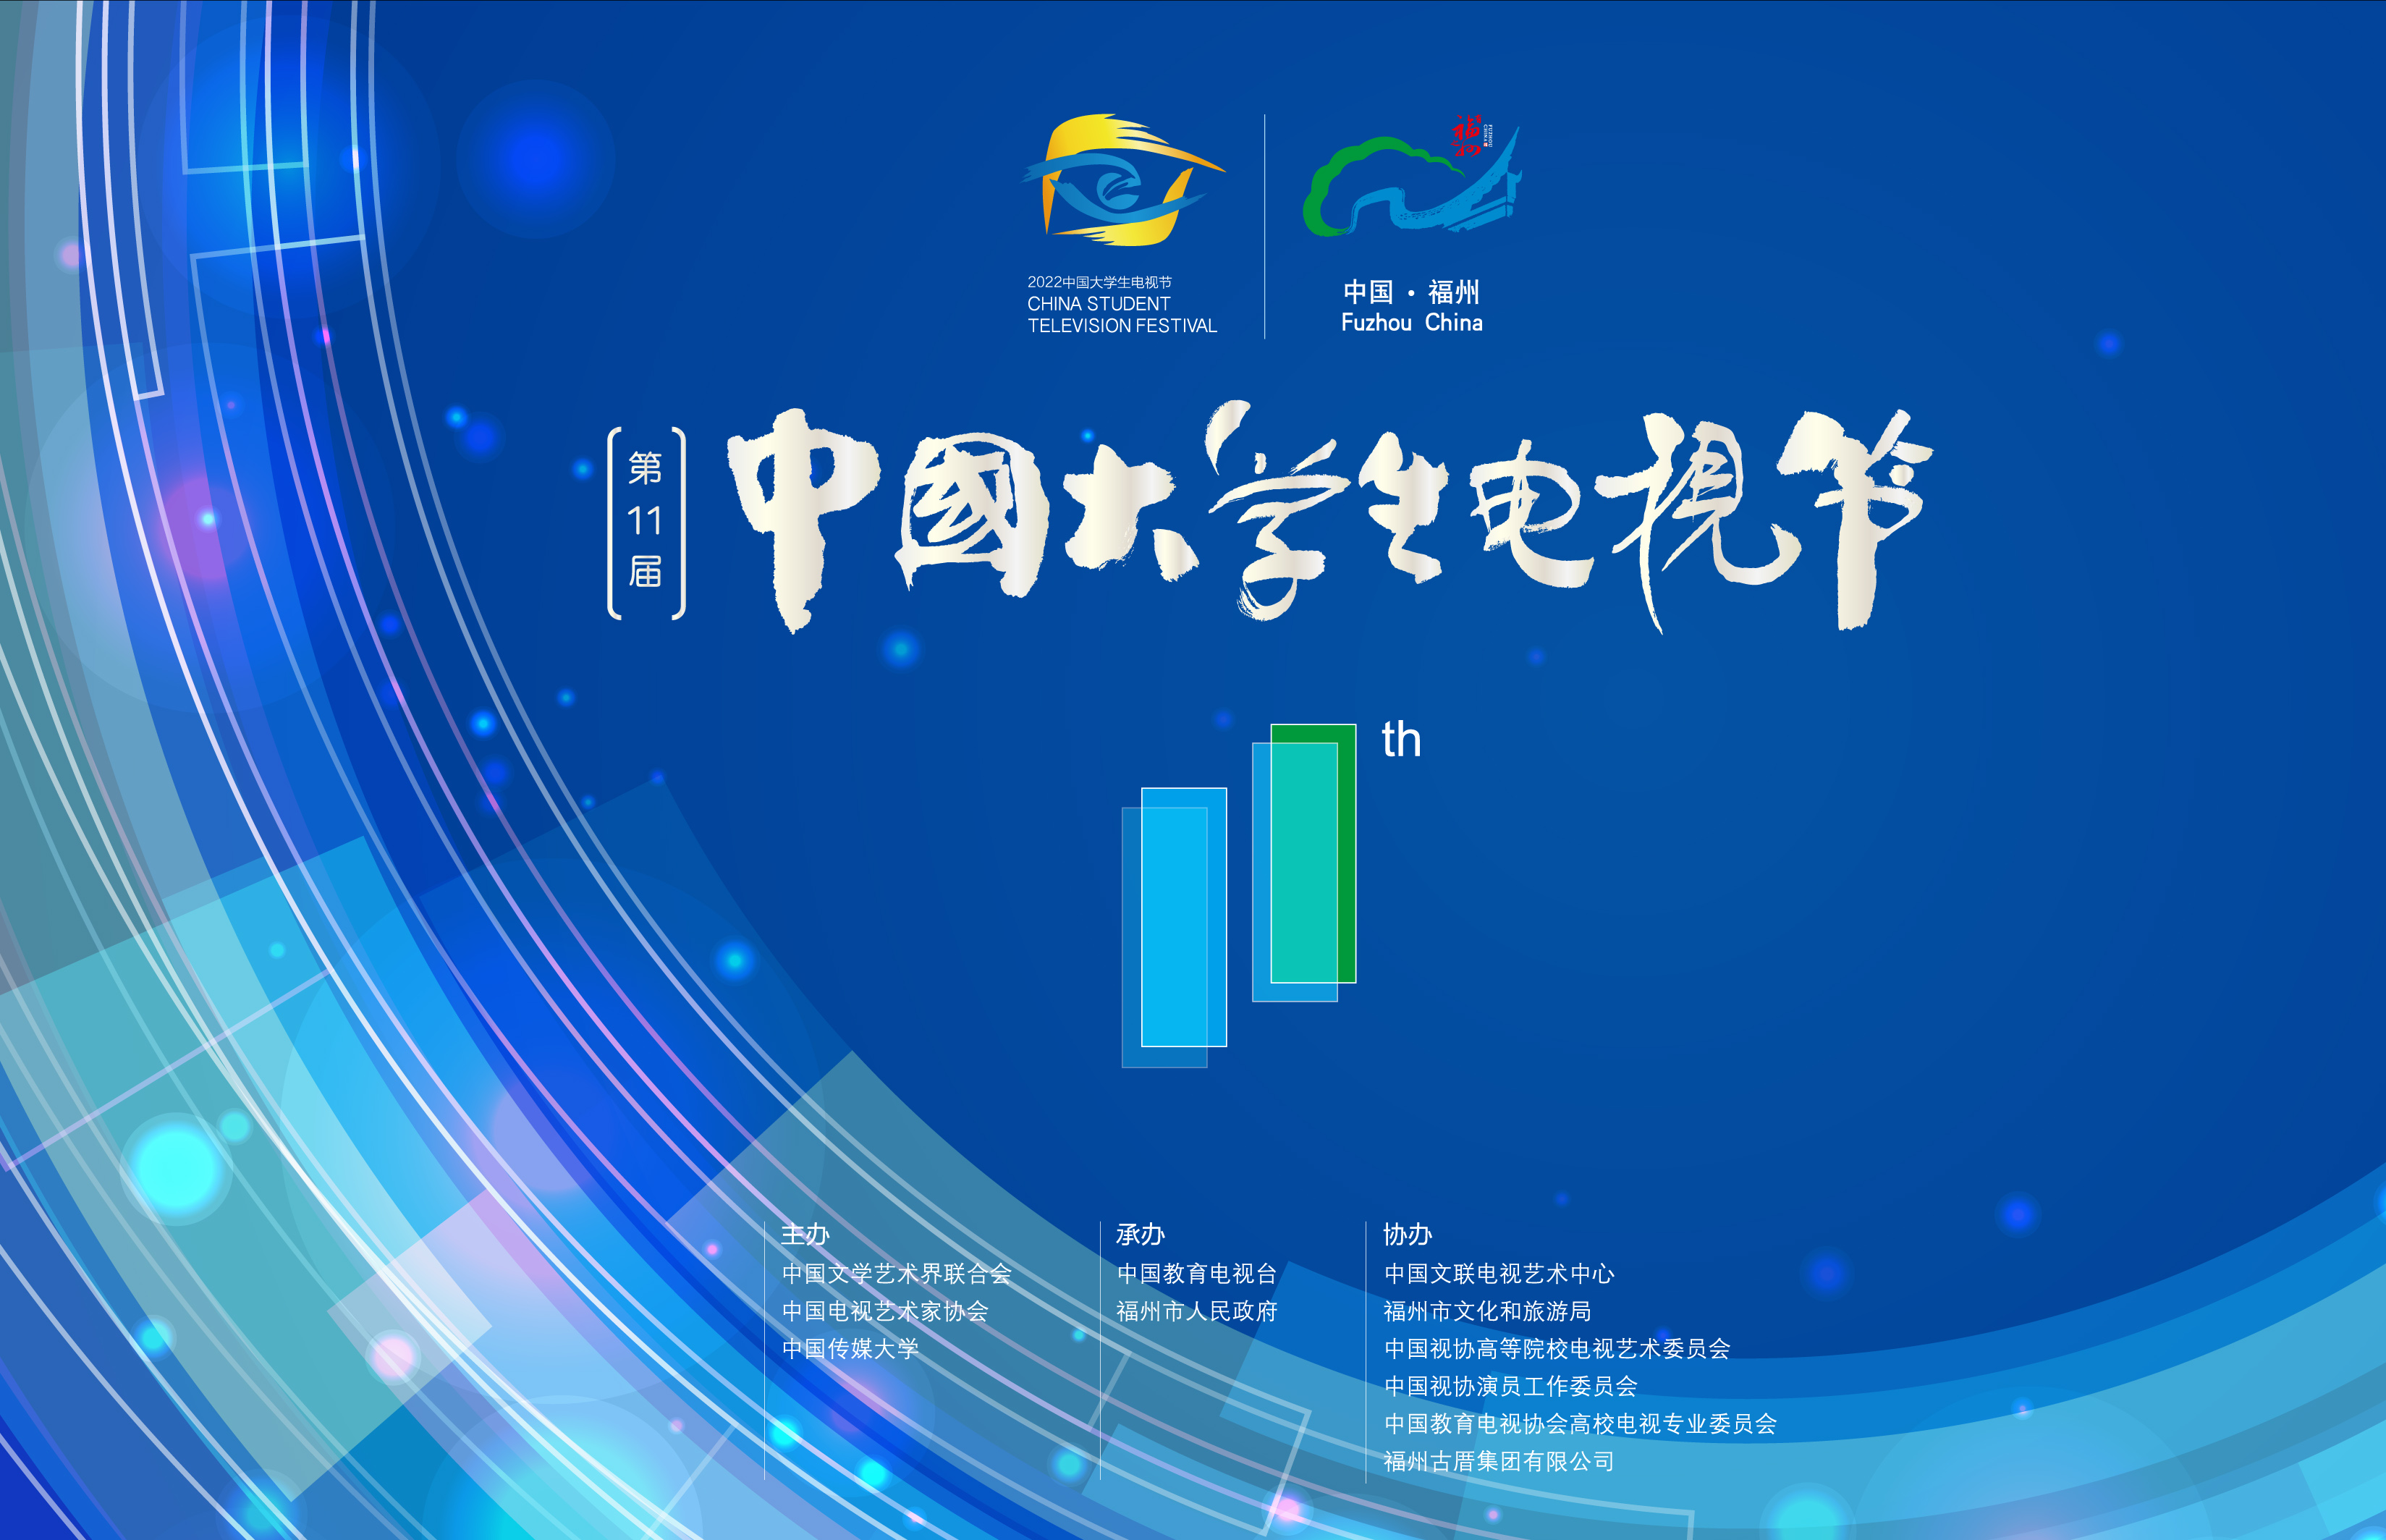 第十一届中国大学生电视节明年2月下旬在福州举办